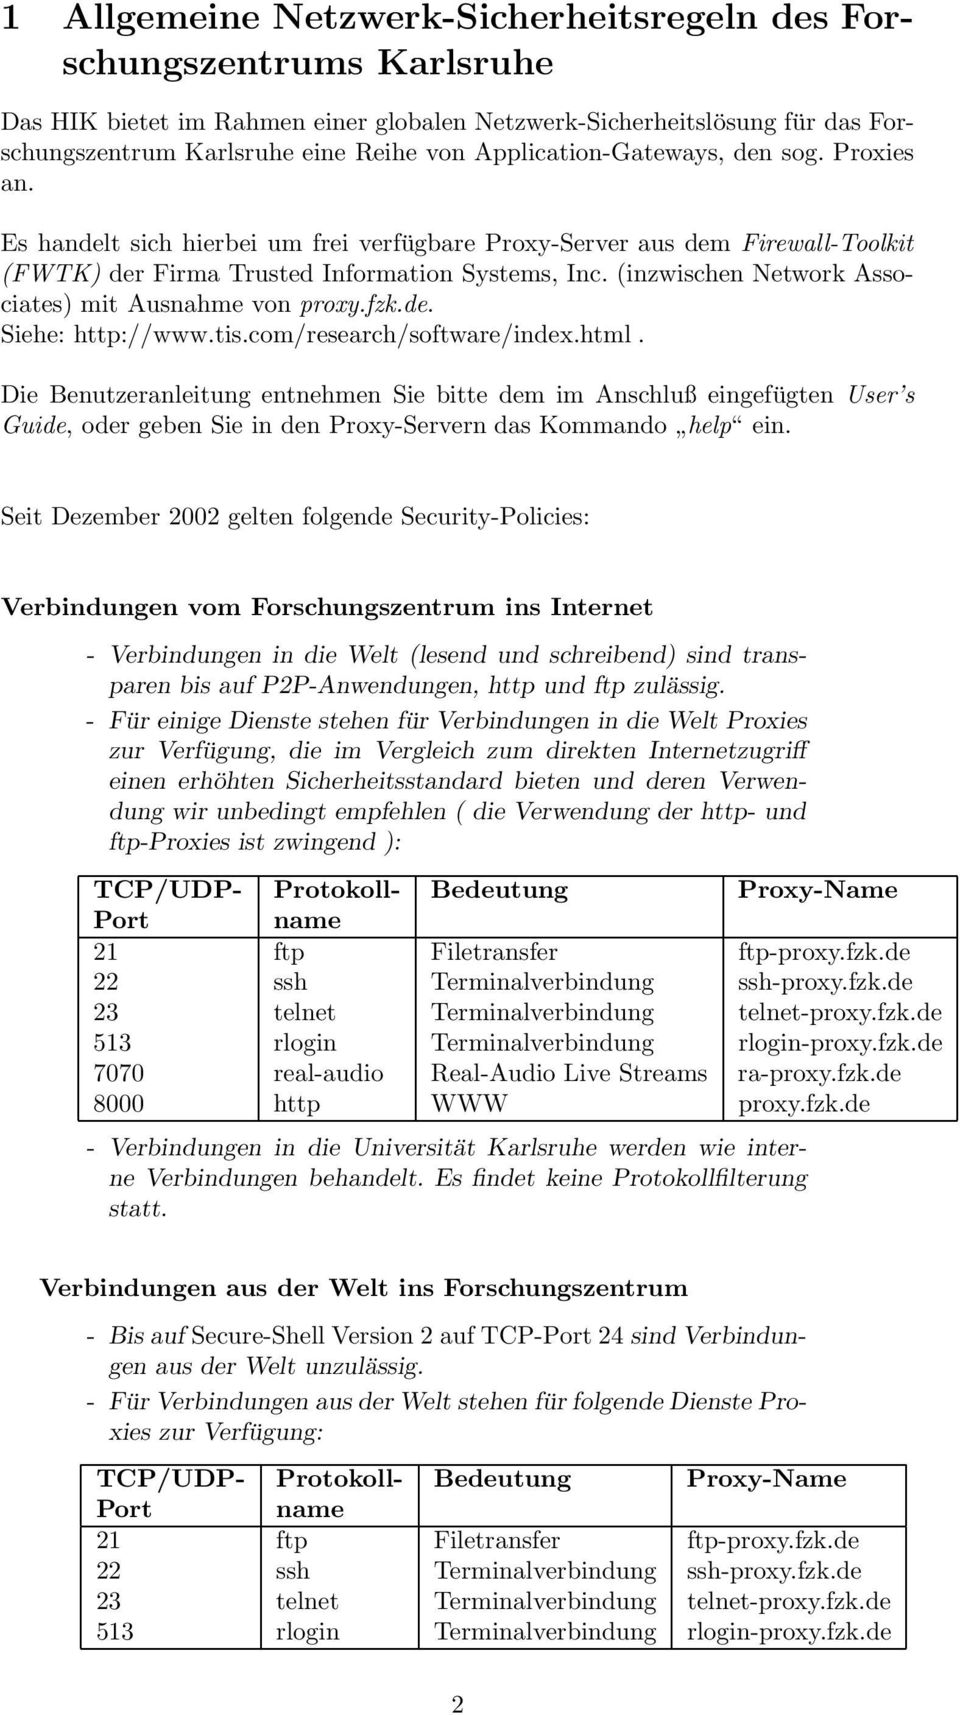 (inzwischen Network Associates) mit Ausnahme von proxy.fzk.de. Siehe: http://www.tis.com/research/software/index.html.